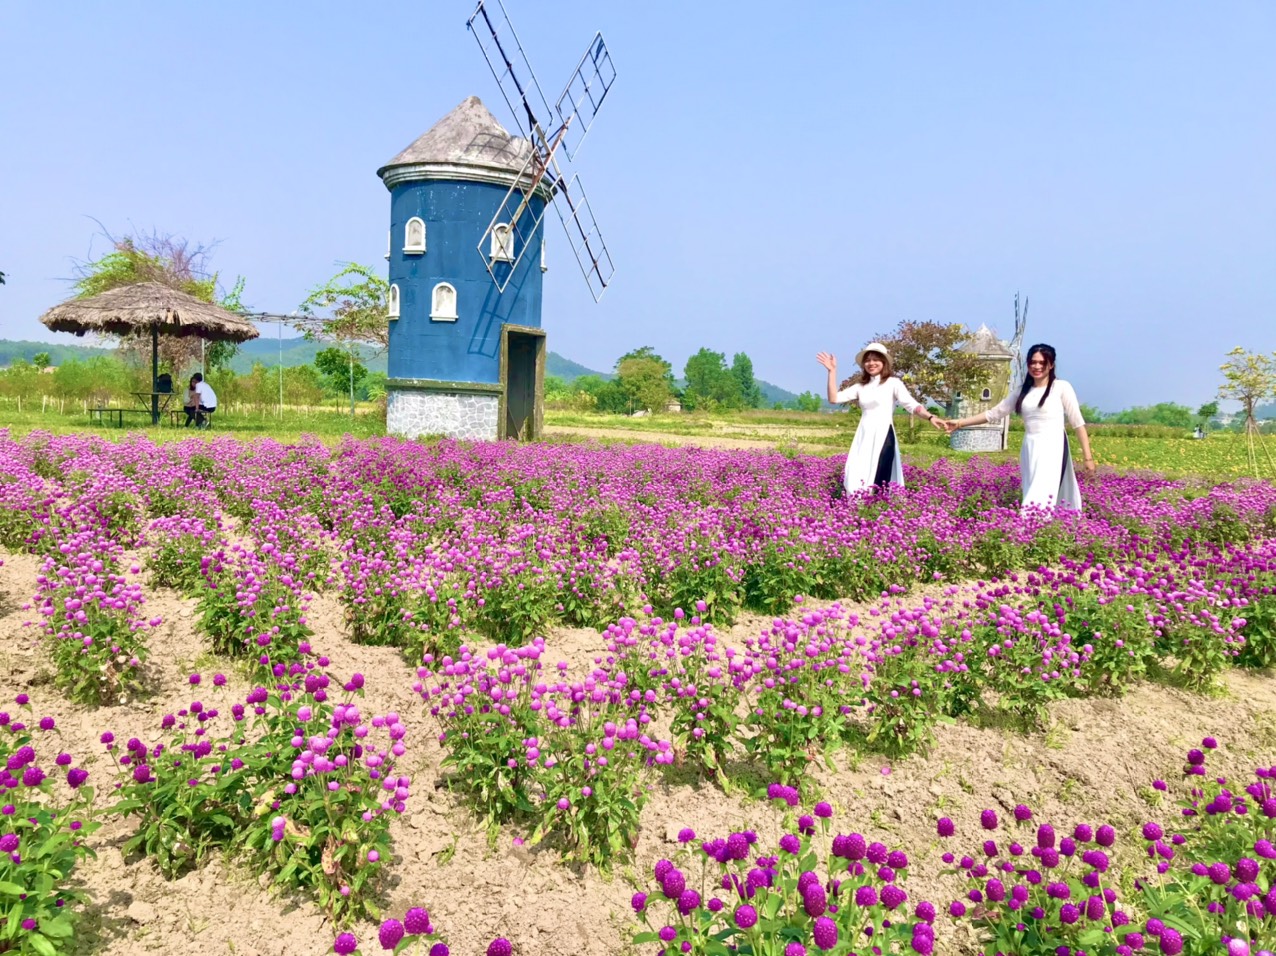 ROSE GARDEN ở Bắc Giang được biết đến là một điểm đến lý tưởng để tìm hiểu và thưởng ngoạn hoa hồng đầy màu sắc. Hãy xem hình ảnh này để cảm nhận vẻ đẹp tuyệt vời của nơi này.